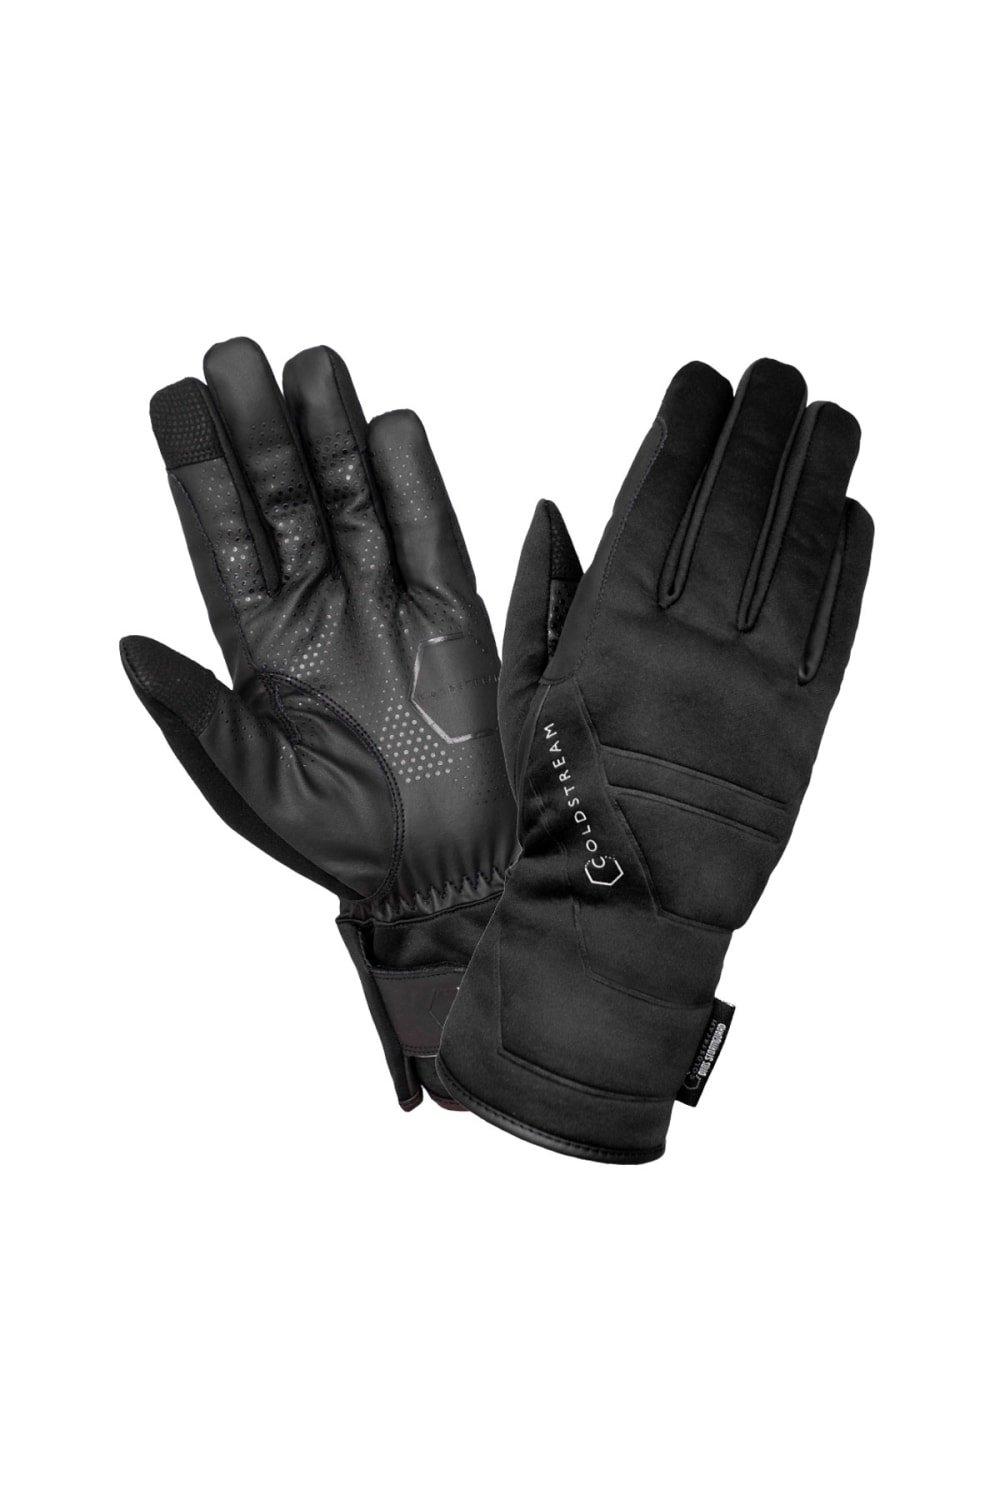 Зимние перчатки Duns StormGuard Coldstream, черный